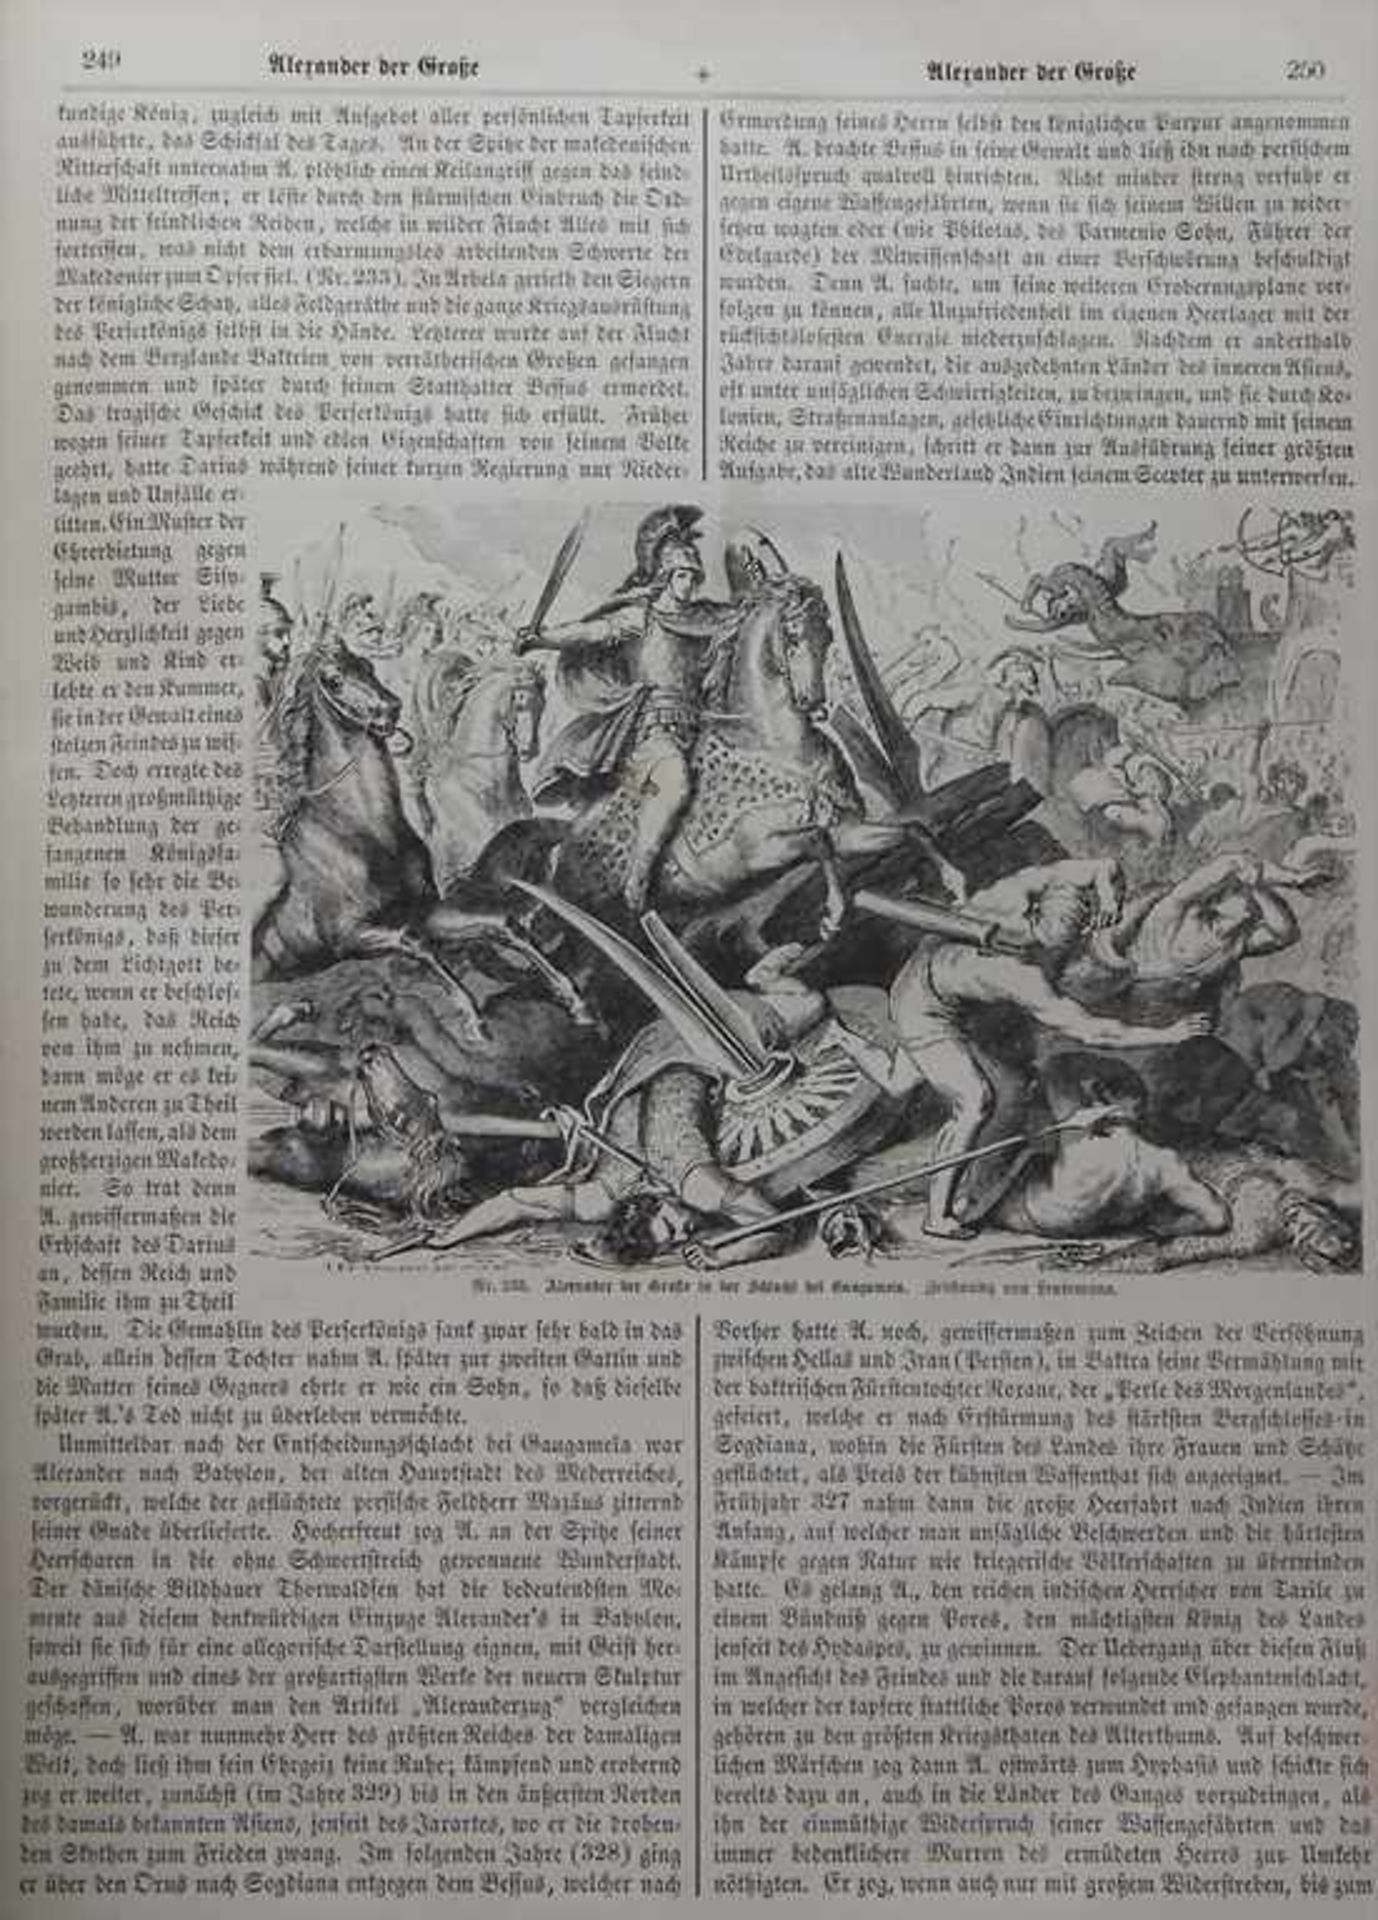 Spamers Illustrirtes Konversations-Lexikon für das Volk, 8 Bände, Leipzig, 1870 - Image 3 of 4